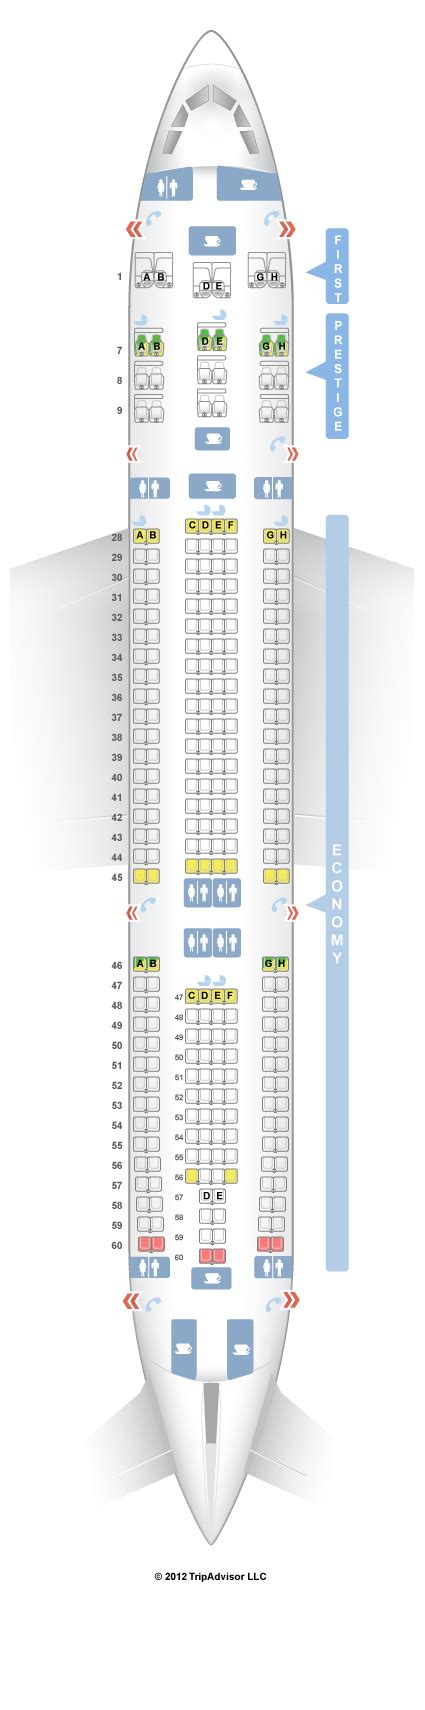 Hawaiian Airlines Airbus A332 Seating Chart Bios Pics